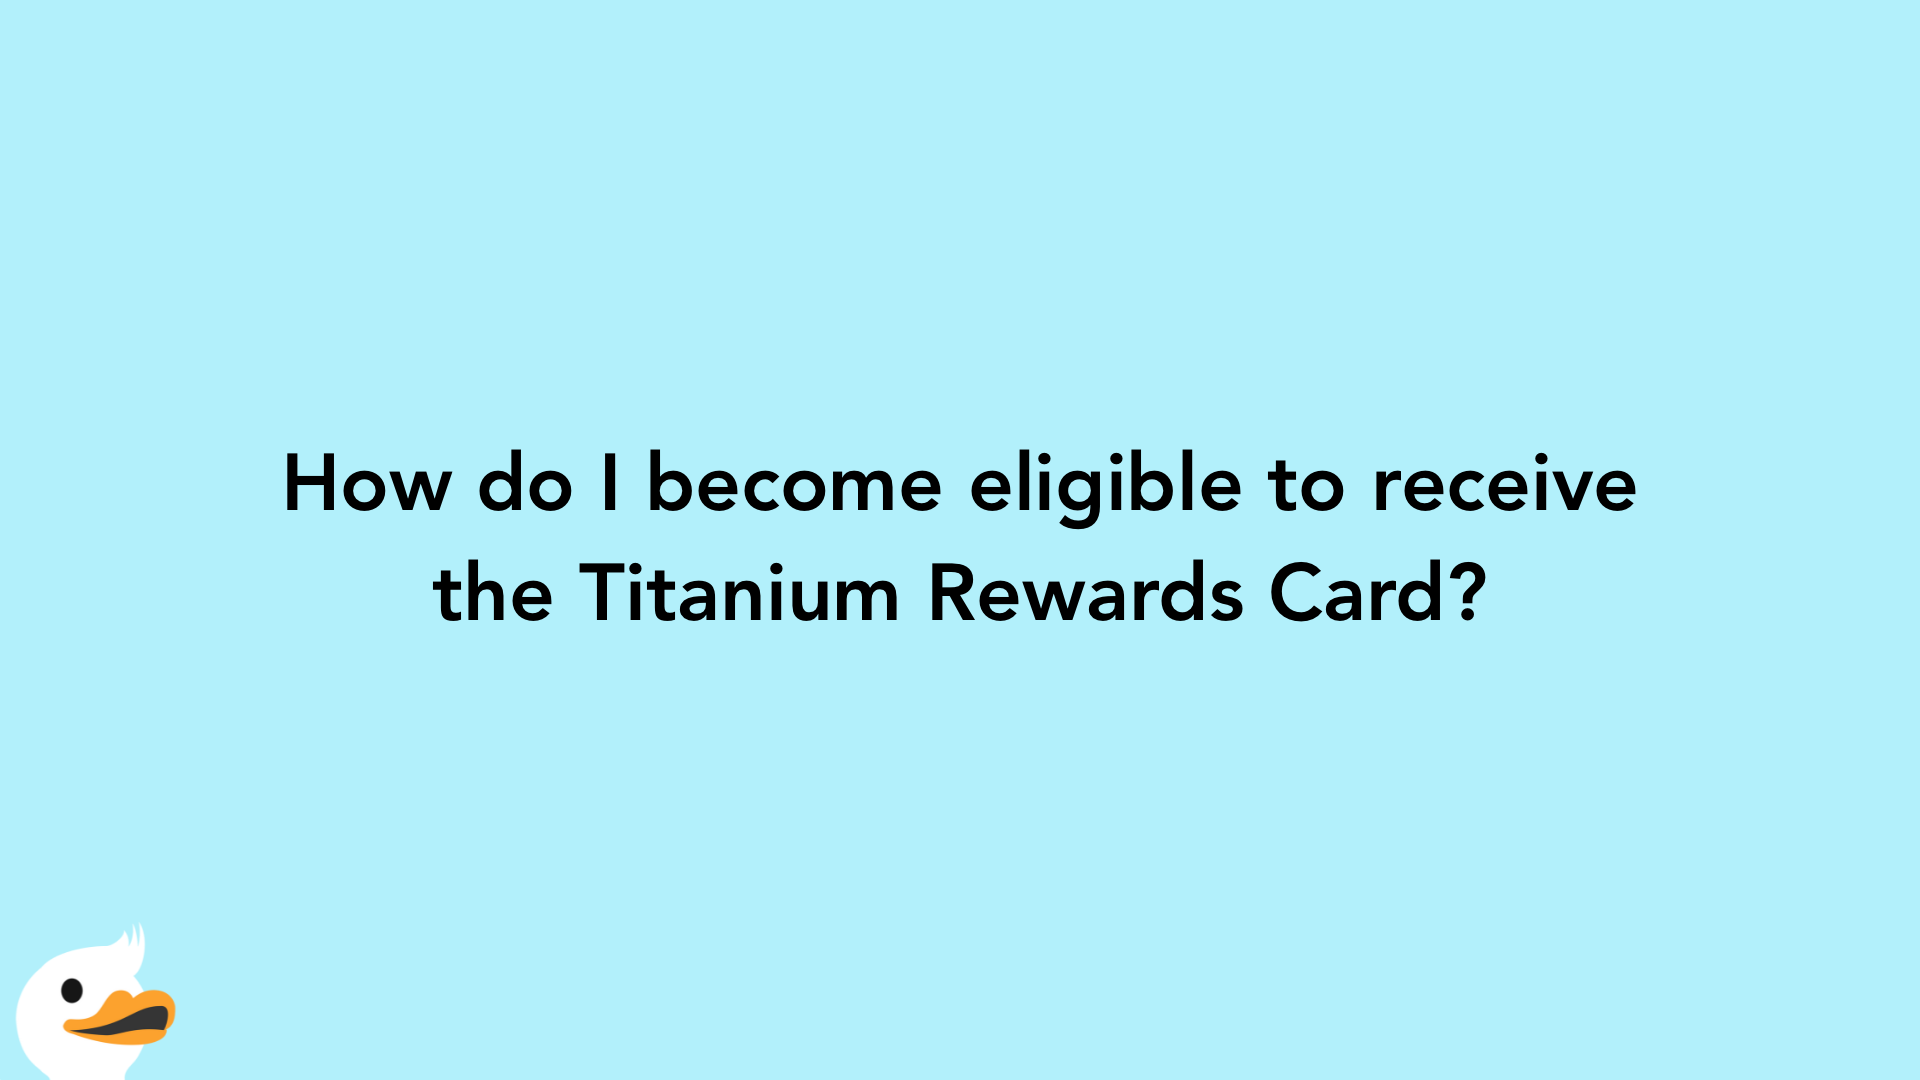 How do I become eligible to receive the Titanium Rewards Card?